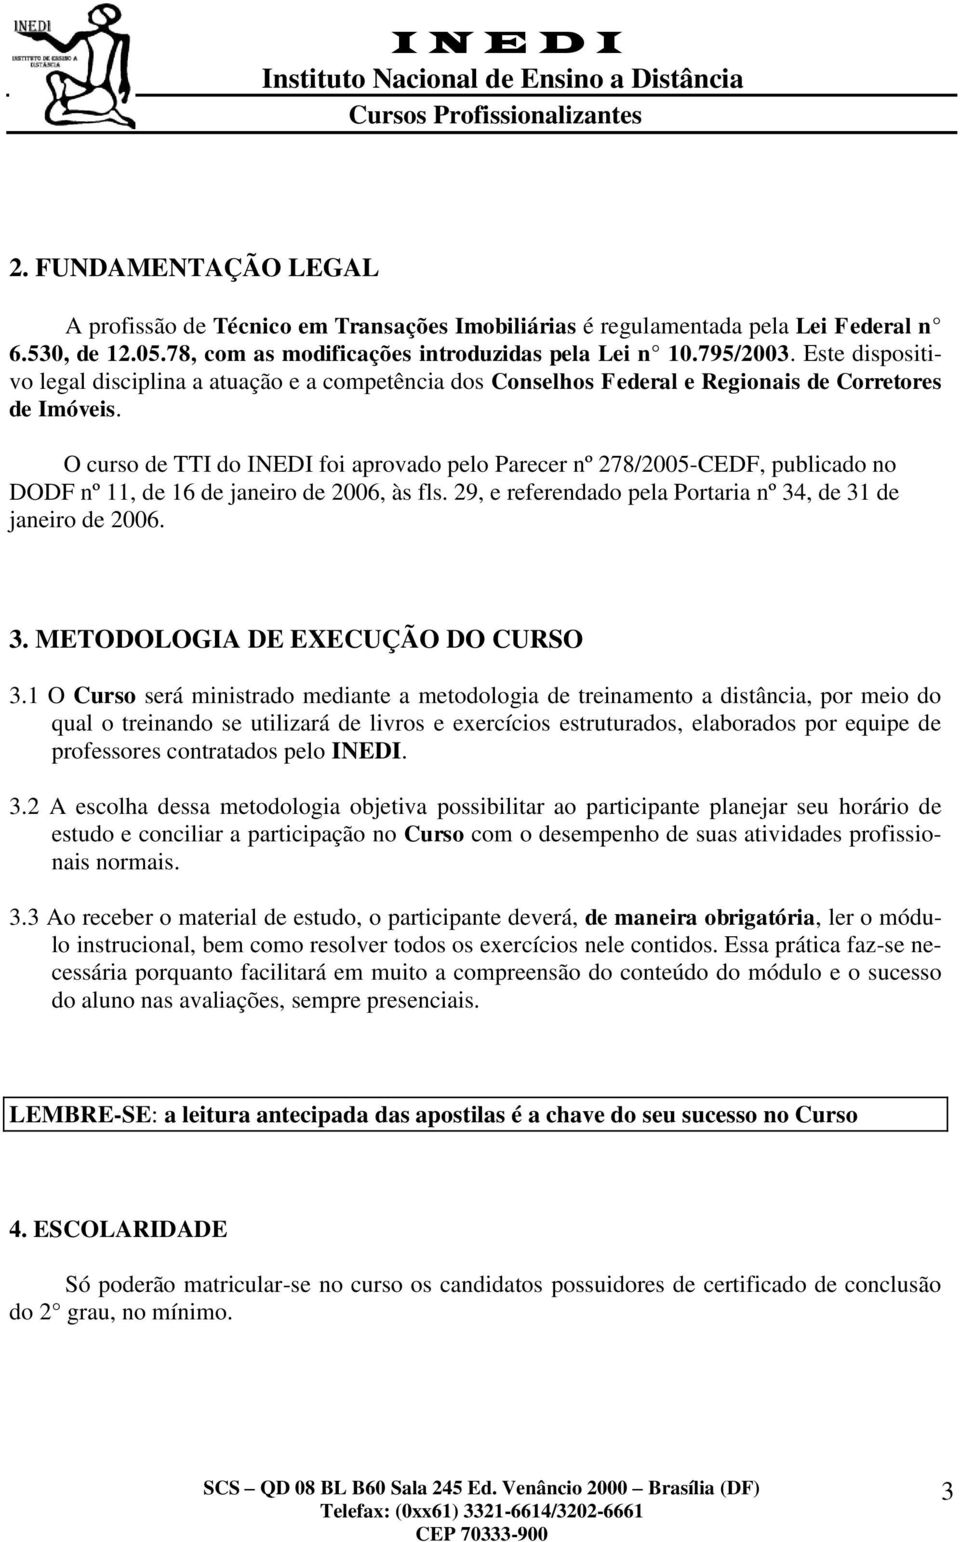 O curso de TTI do INEDI foi aprovado pelo Parecer nº 278/2005-CEDF, publicado no DODF nº 11, de 16 de janeiro de 2006, às fls. 29, e referendado pela Portaria nº 34, de 31 de janeiro de 2006. 3. METODOLOGIA DE EXECUÇÃO DO CURSO 3.